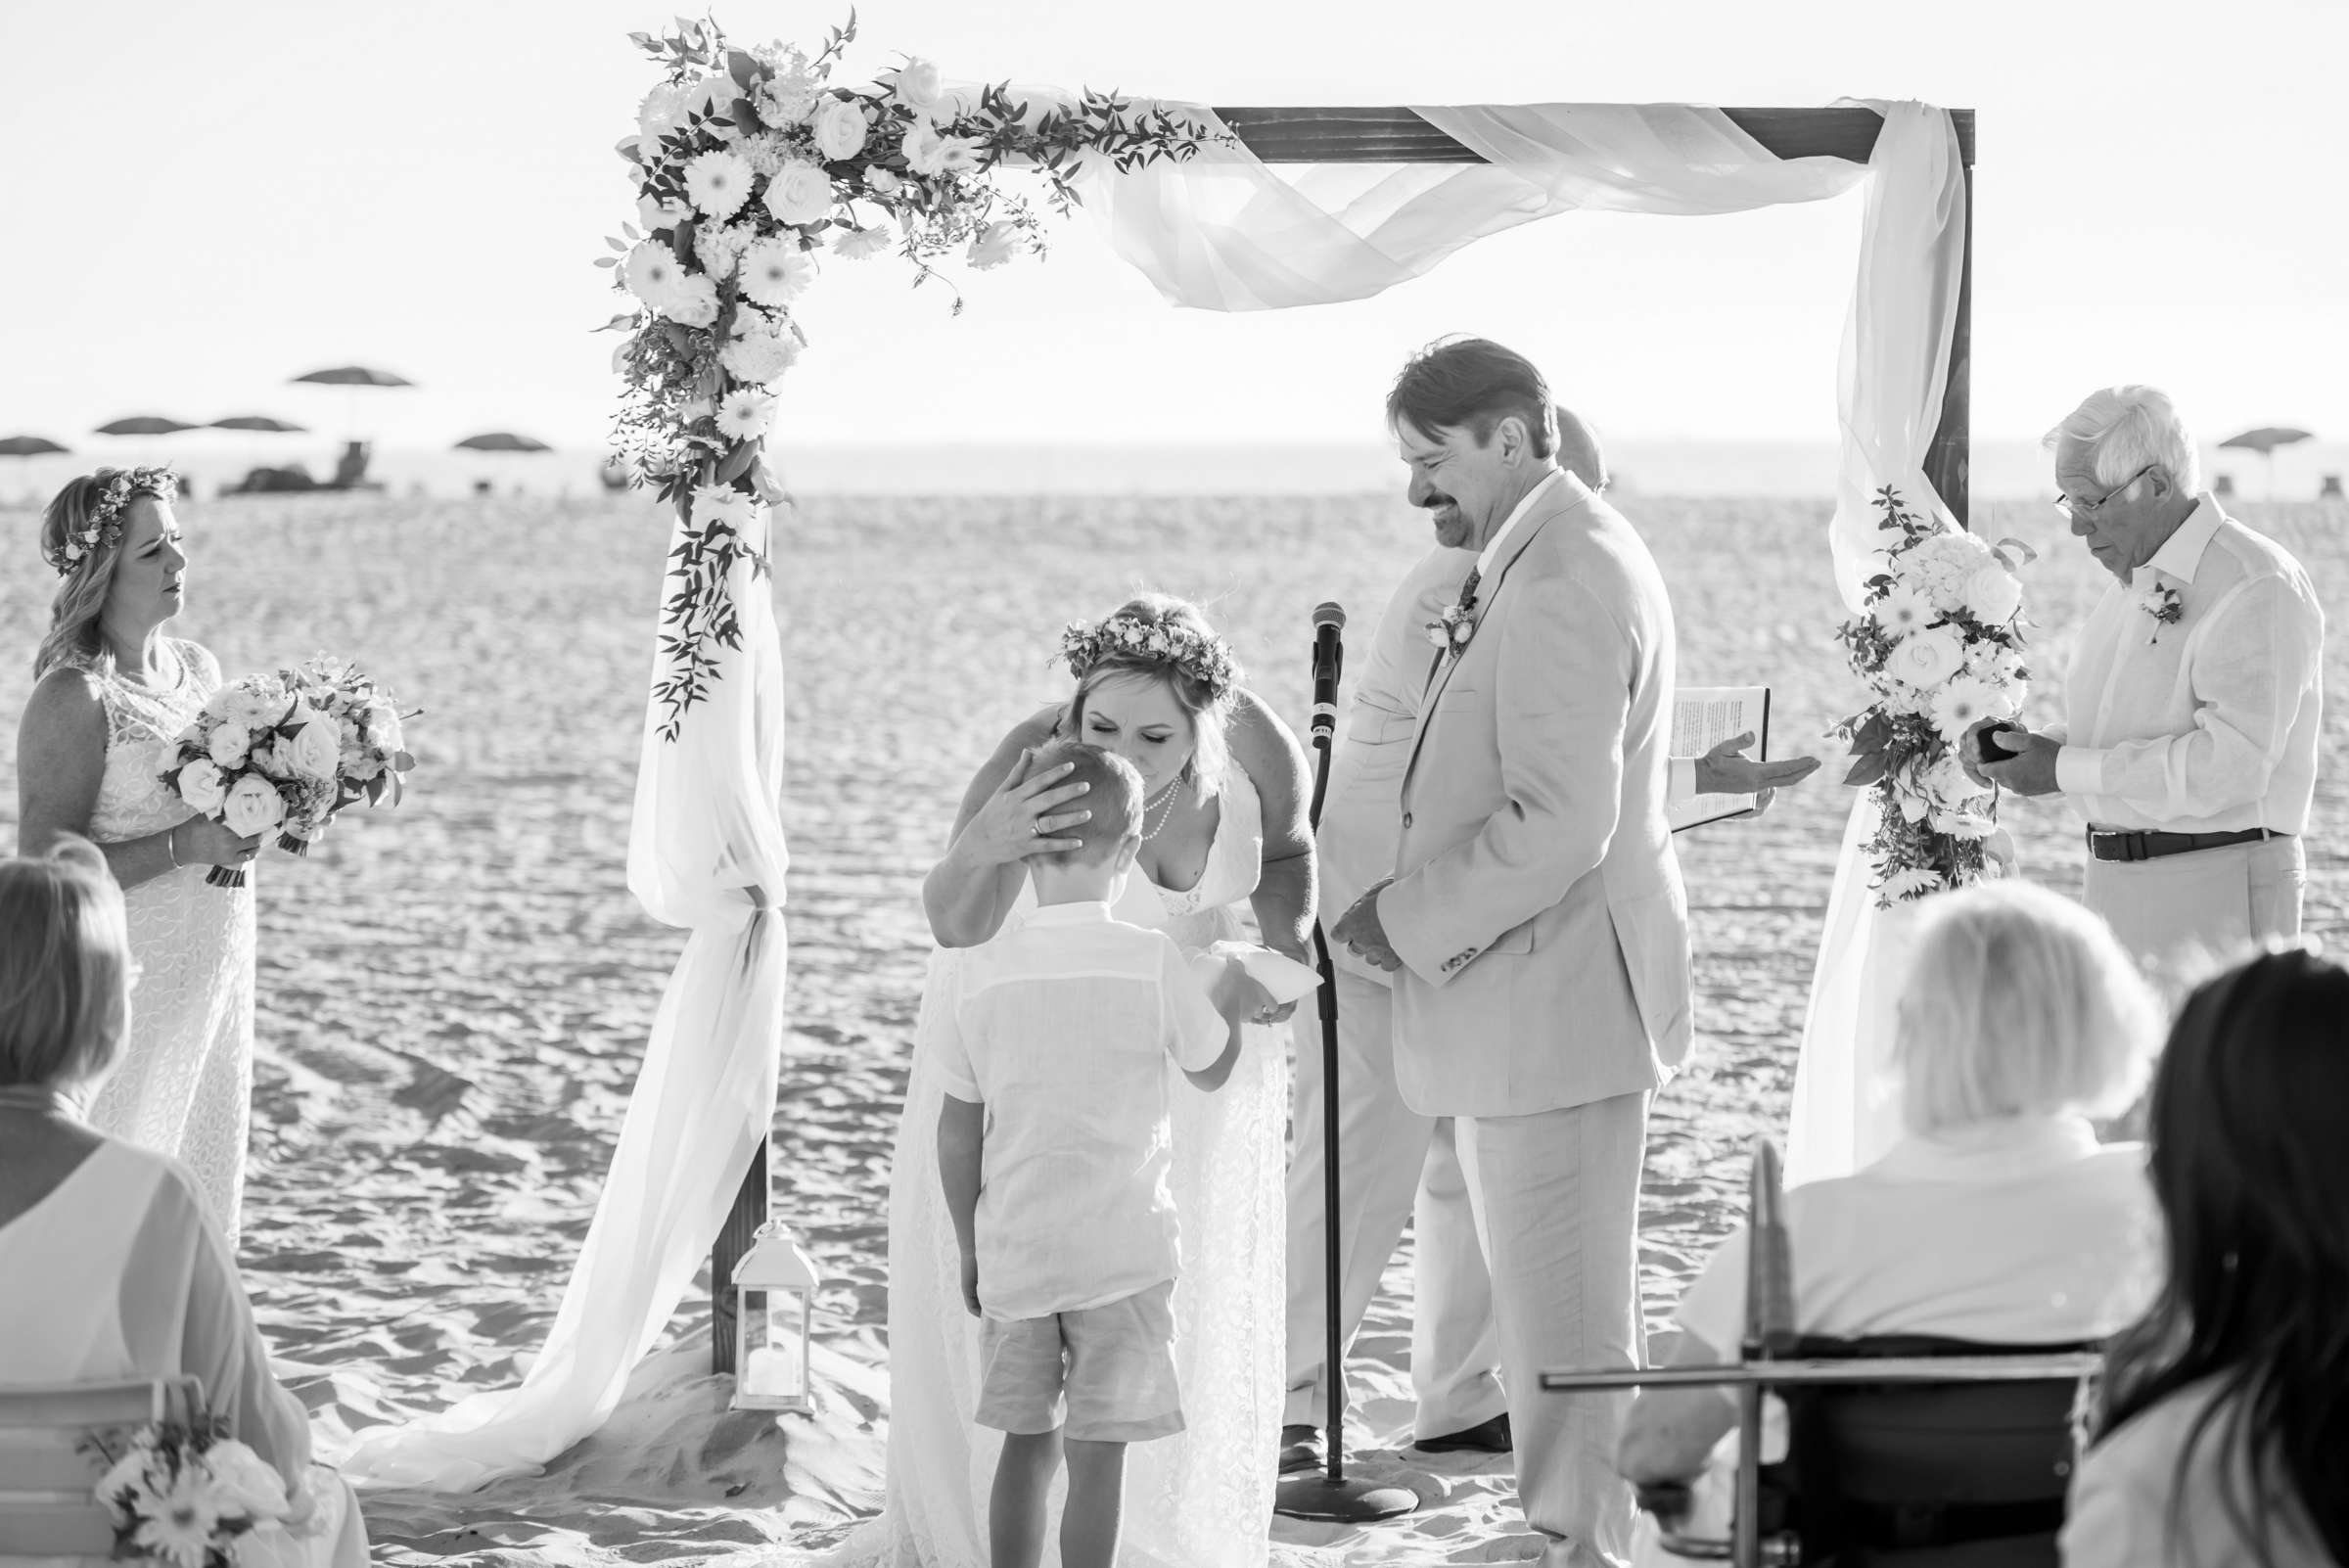 Hotel Del Coronado Wedding, Danielle and Glenn Wedding Photo #17 by True Photography